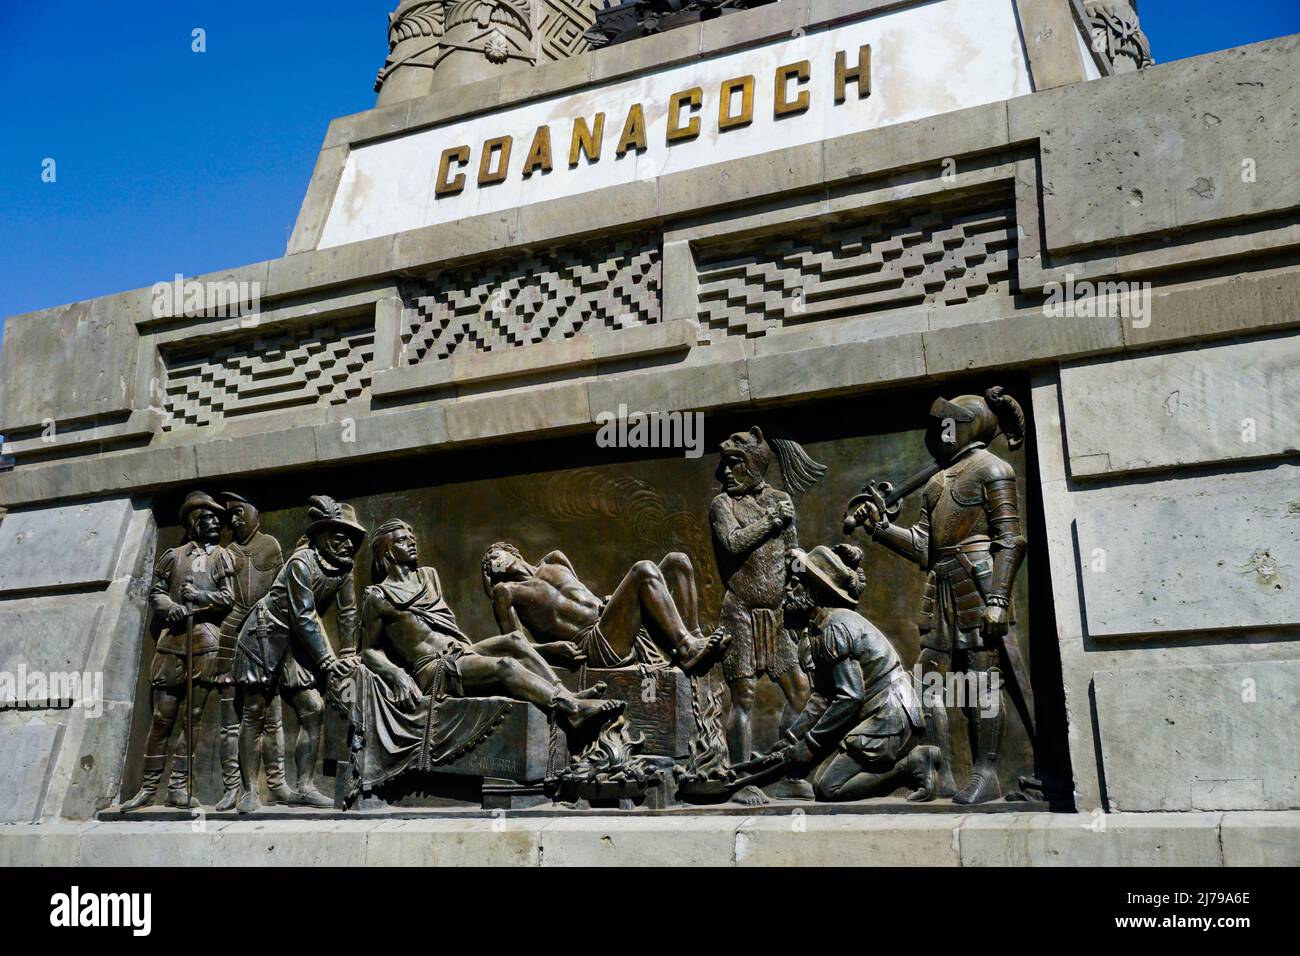 Comandante azteca, Coanacoch siendo torturado durante la conquista española por Cortez, Monumento a Cuauhtémoc en Avenida Paseo de la Reforma, Ciudad de México Foto de stock